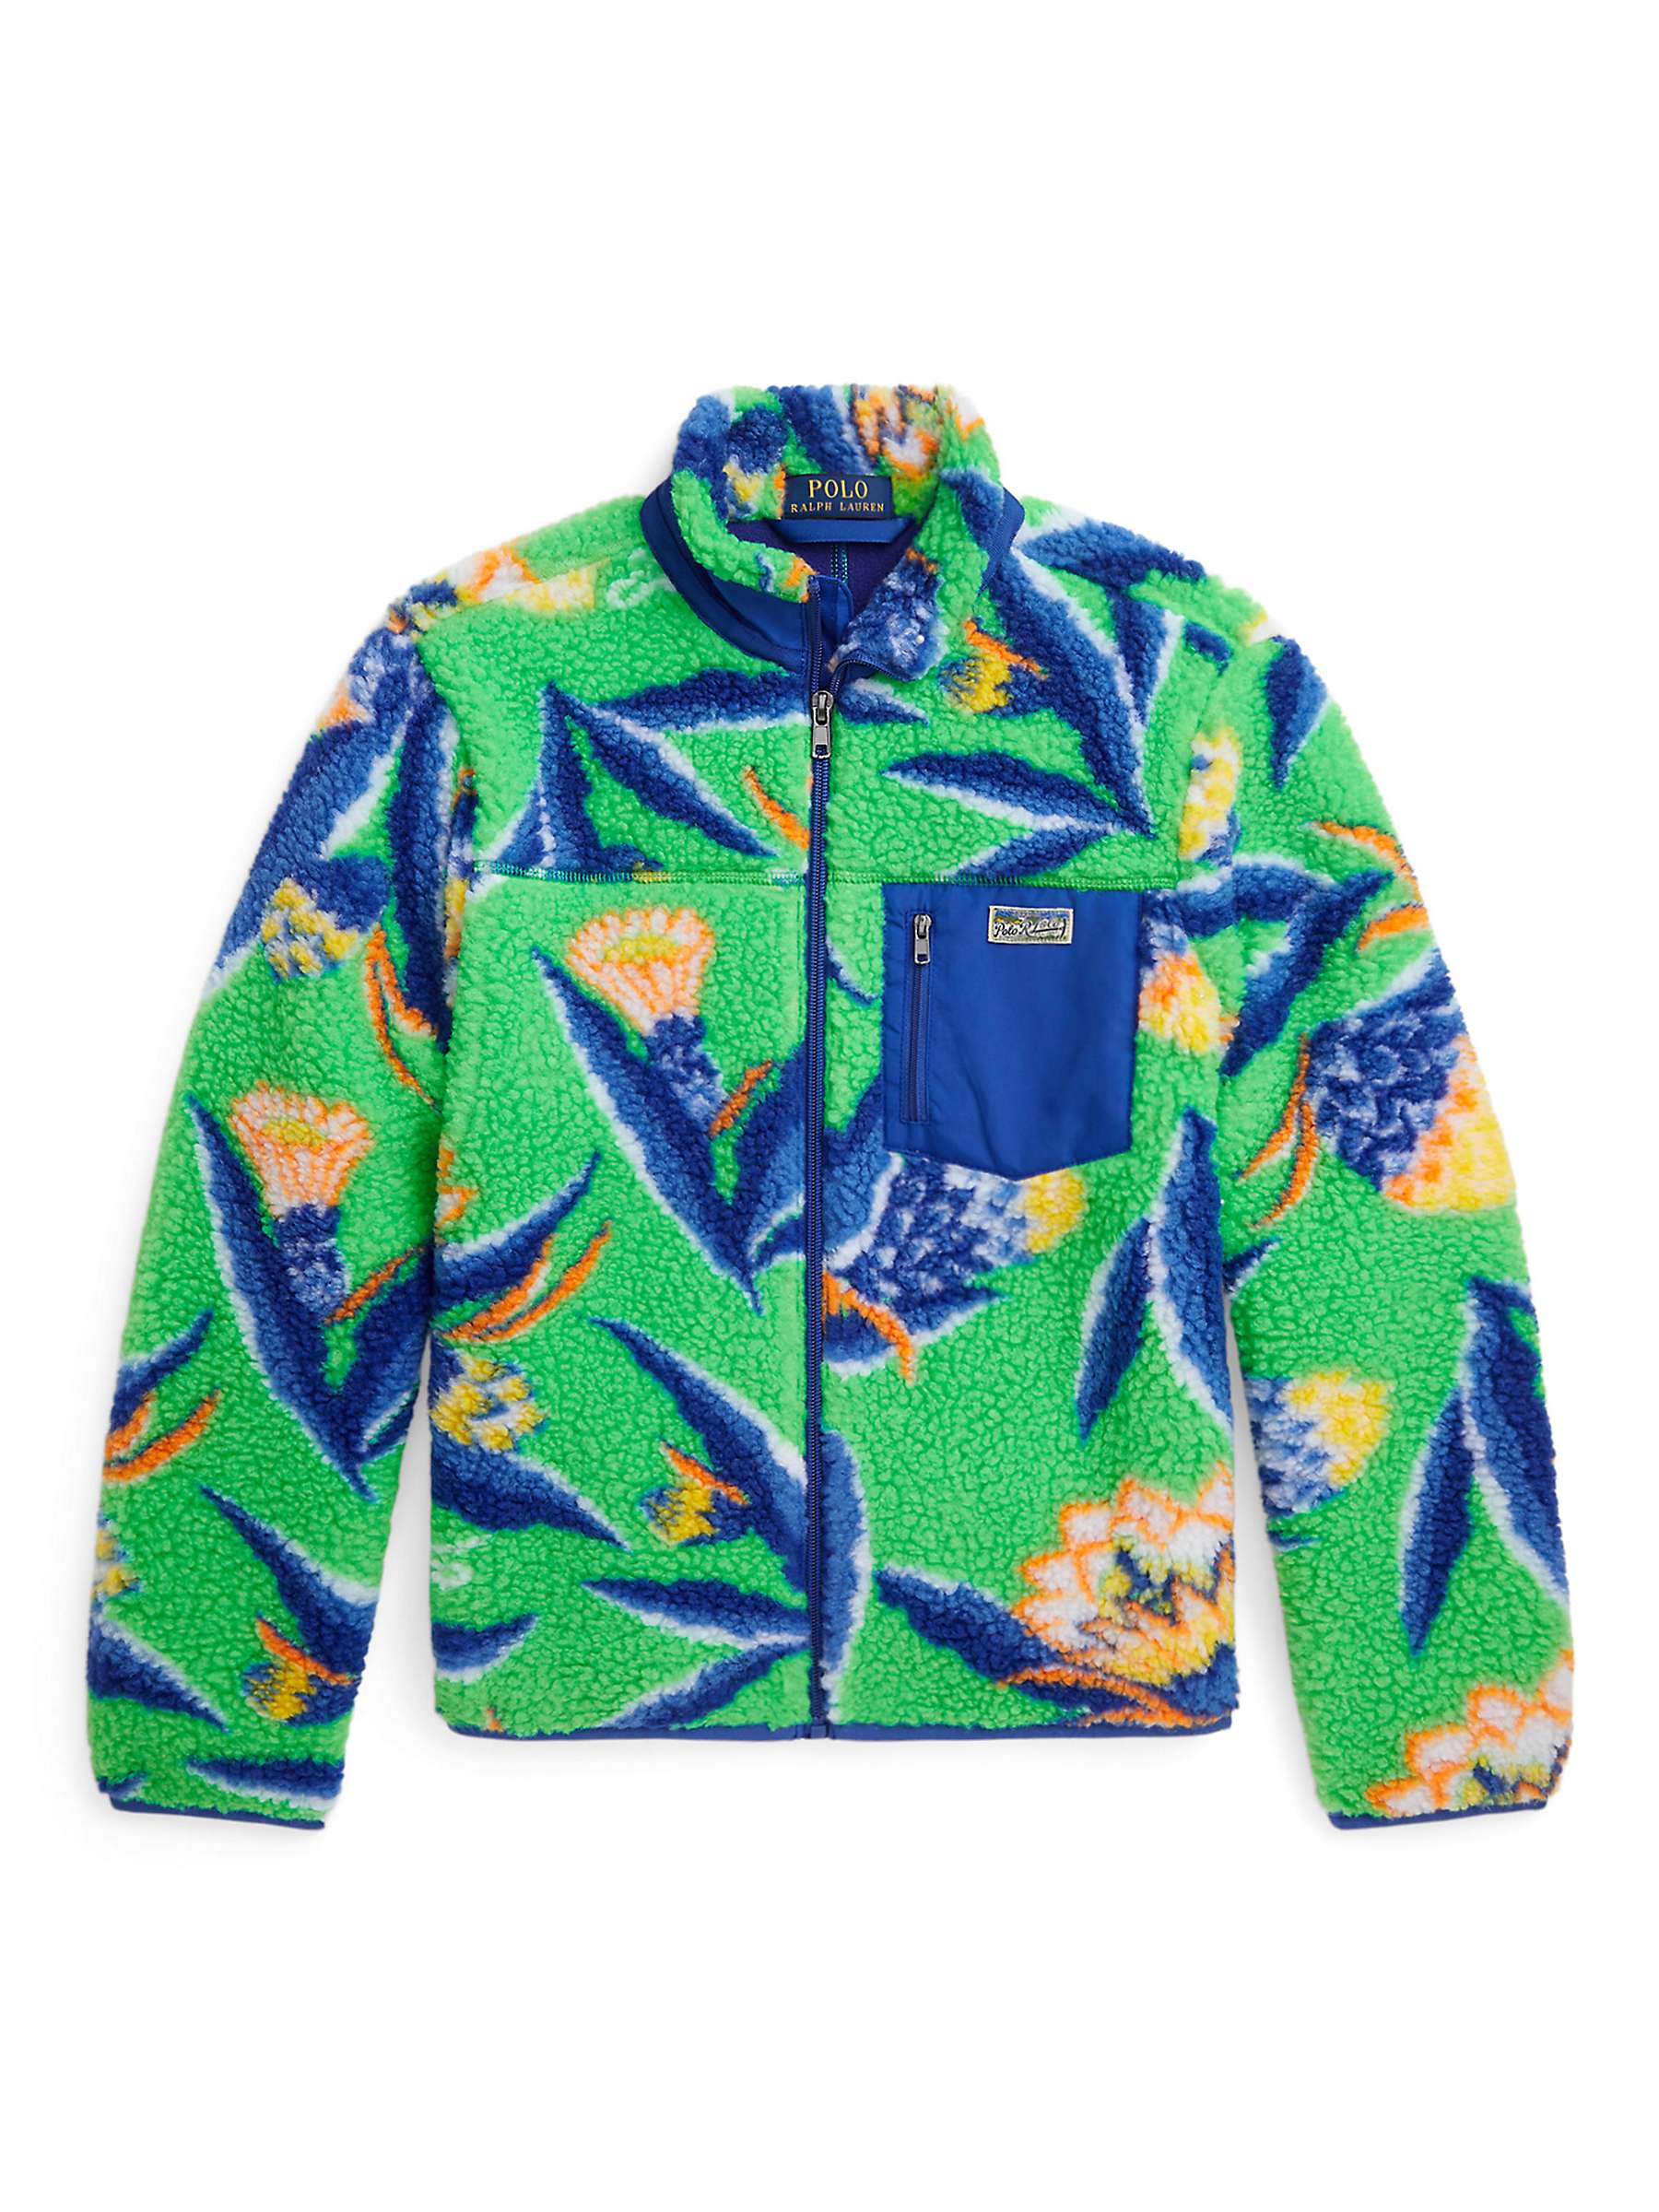 Buy Ralph Lauren Kids' Full Zip Jacket, Multi Online at johnlewis.com